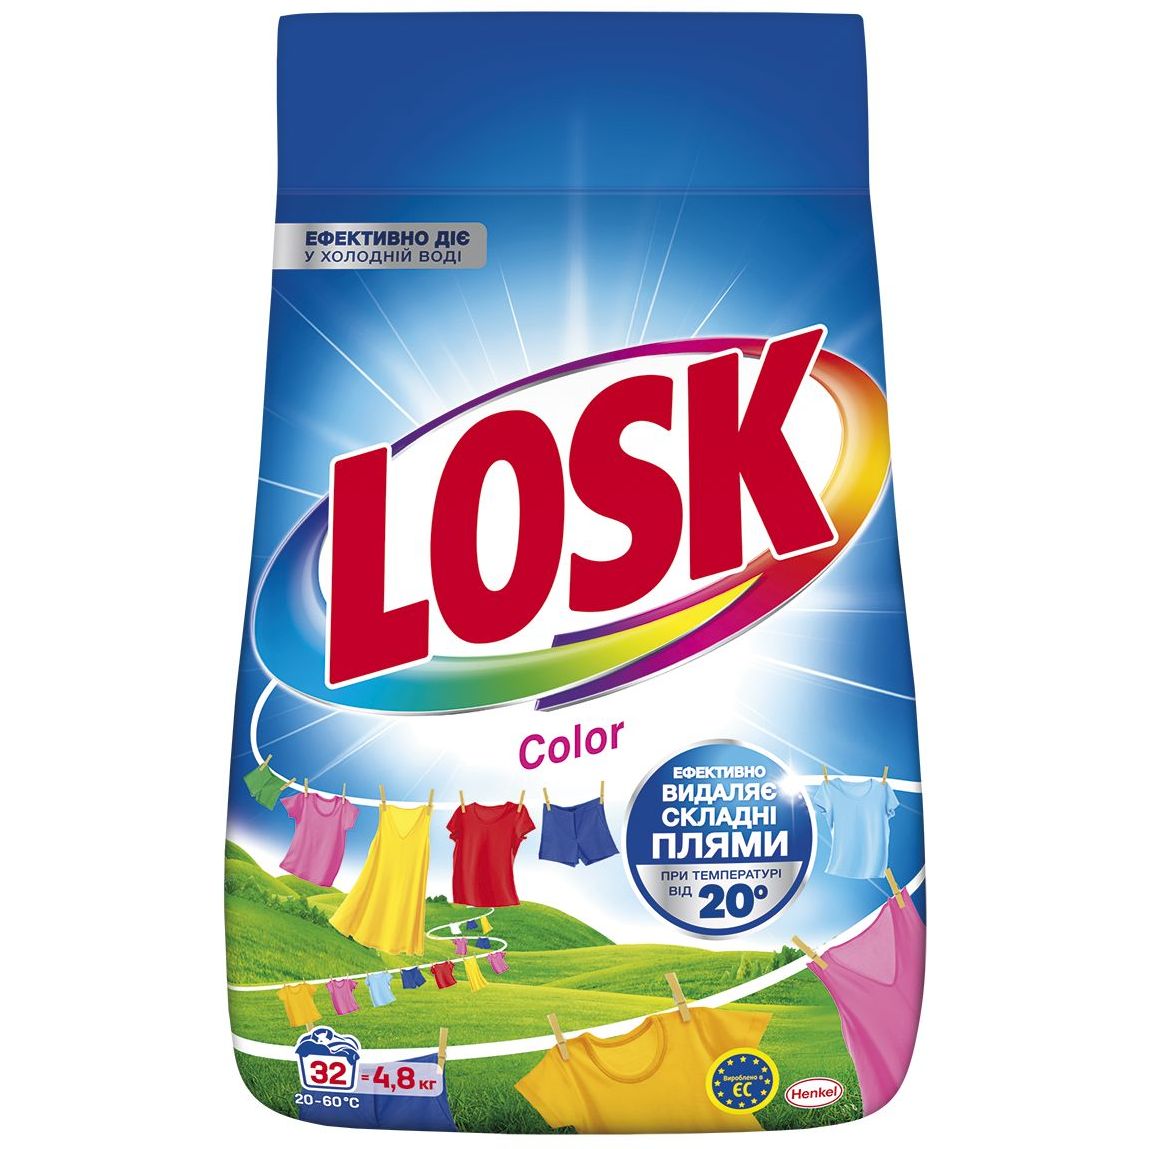 Порошок для стирки Losk Color для цветных вещей 4.8 кг - фото 1